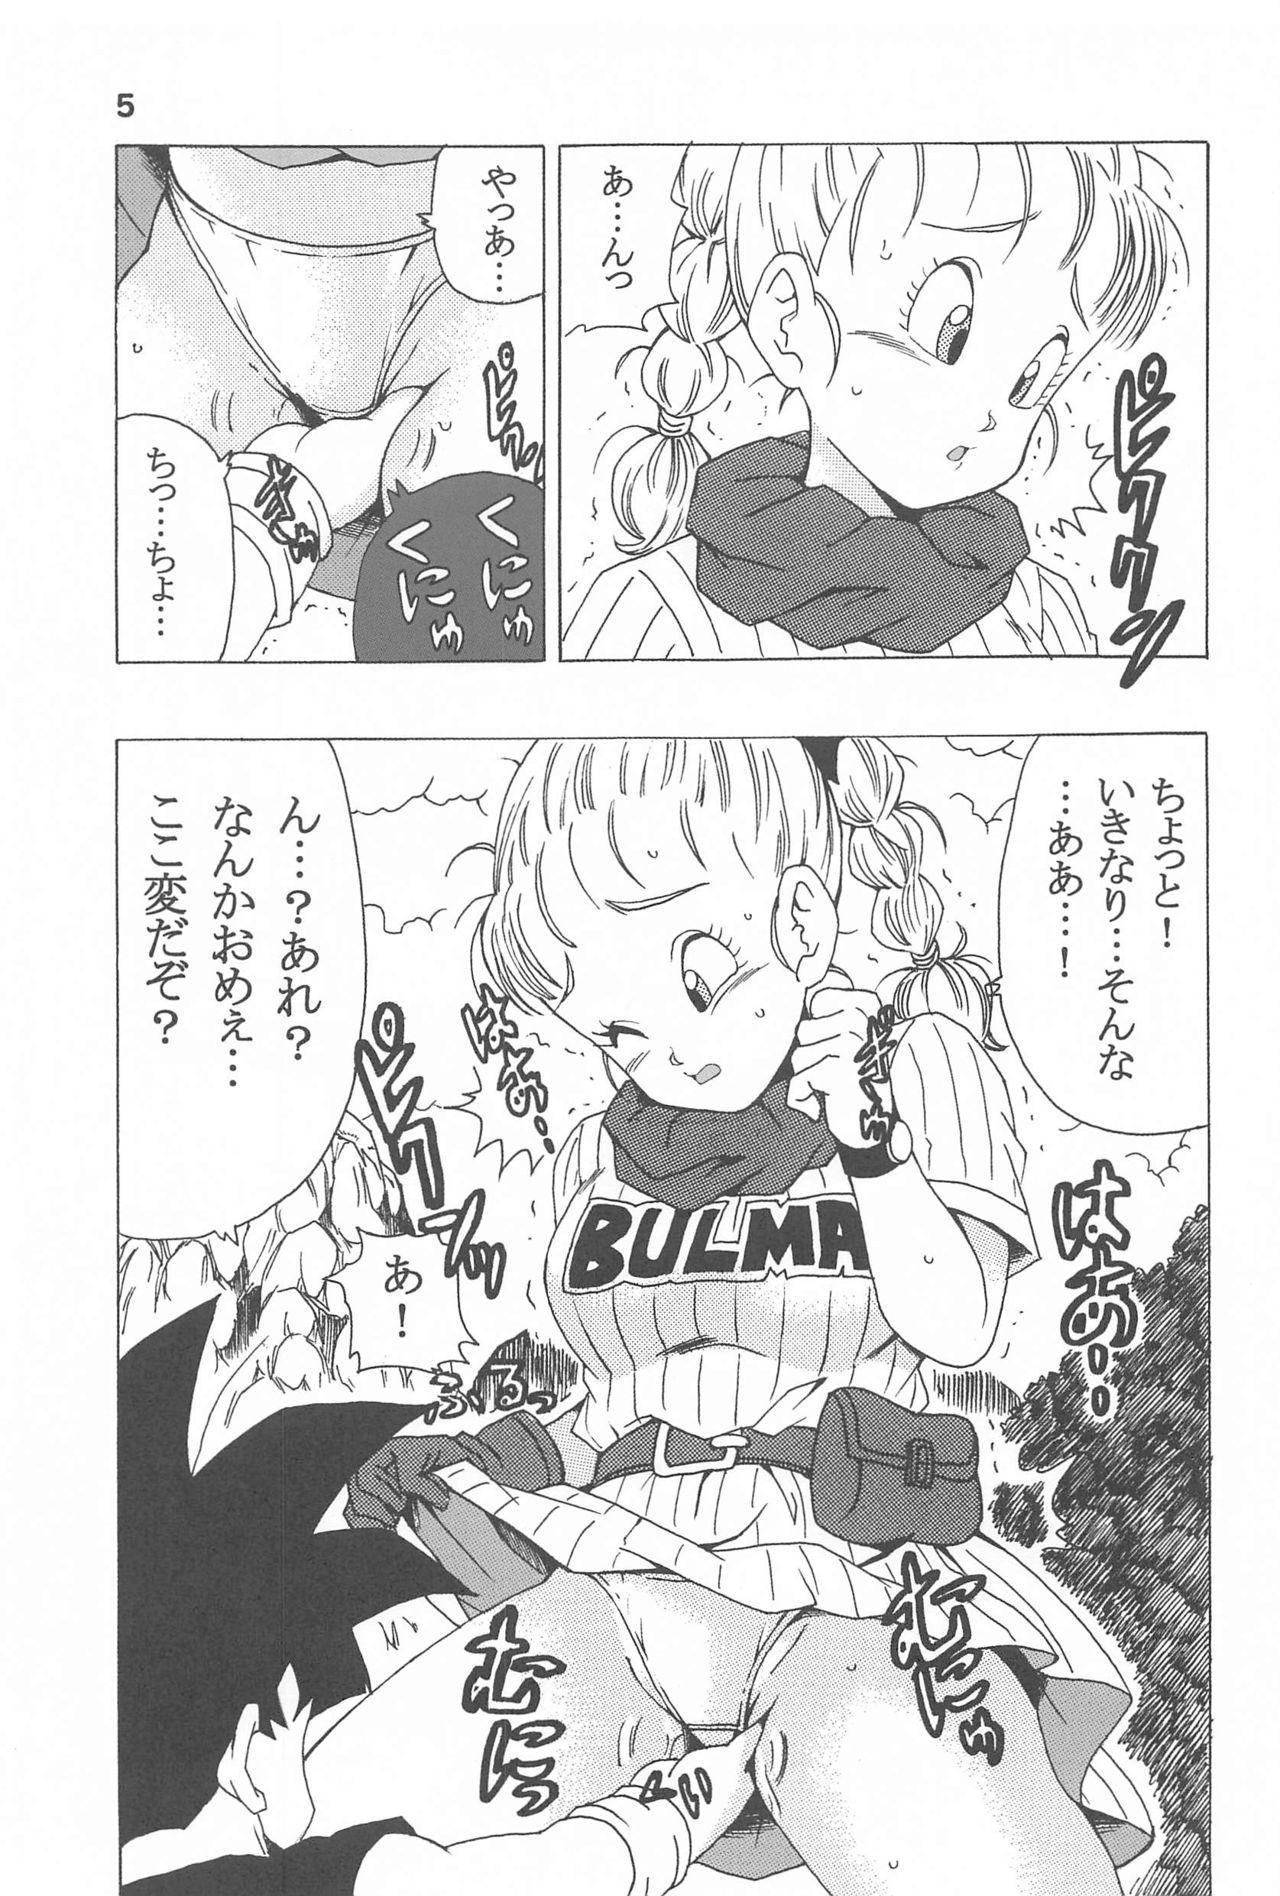 Bulma no Saikyou e no Michi 5